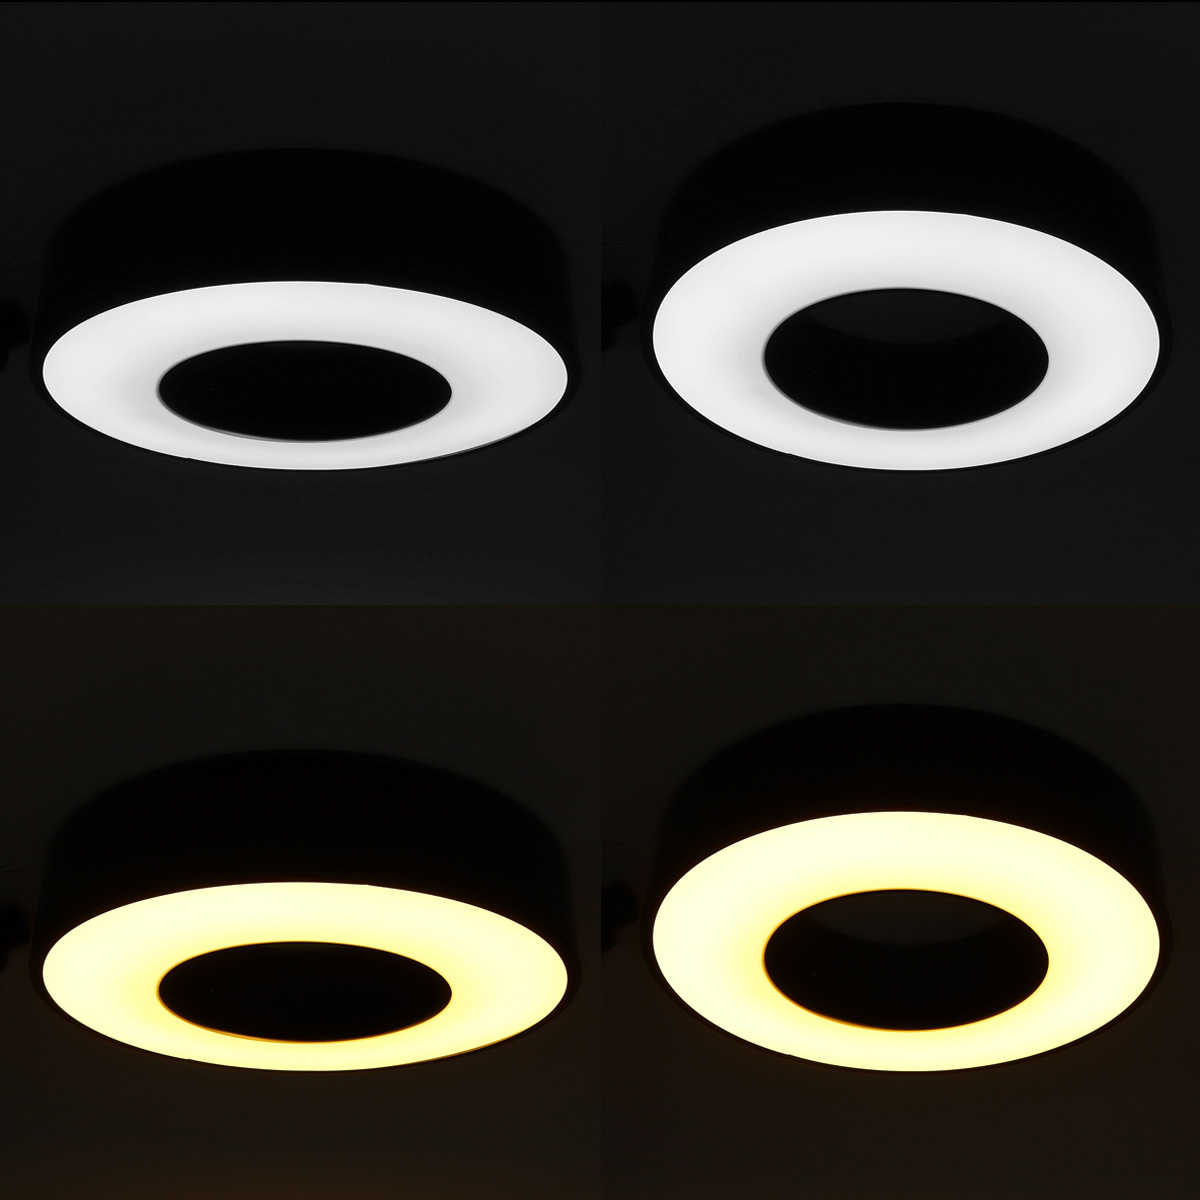 30W-LED-Ceiling-Light-Round-shape-Panel-Light-Home-3-Colors-Lighting-110V-220V-1604735-7